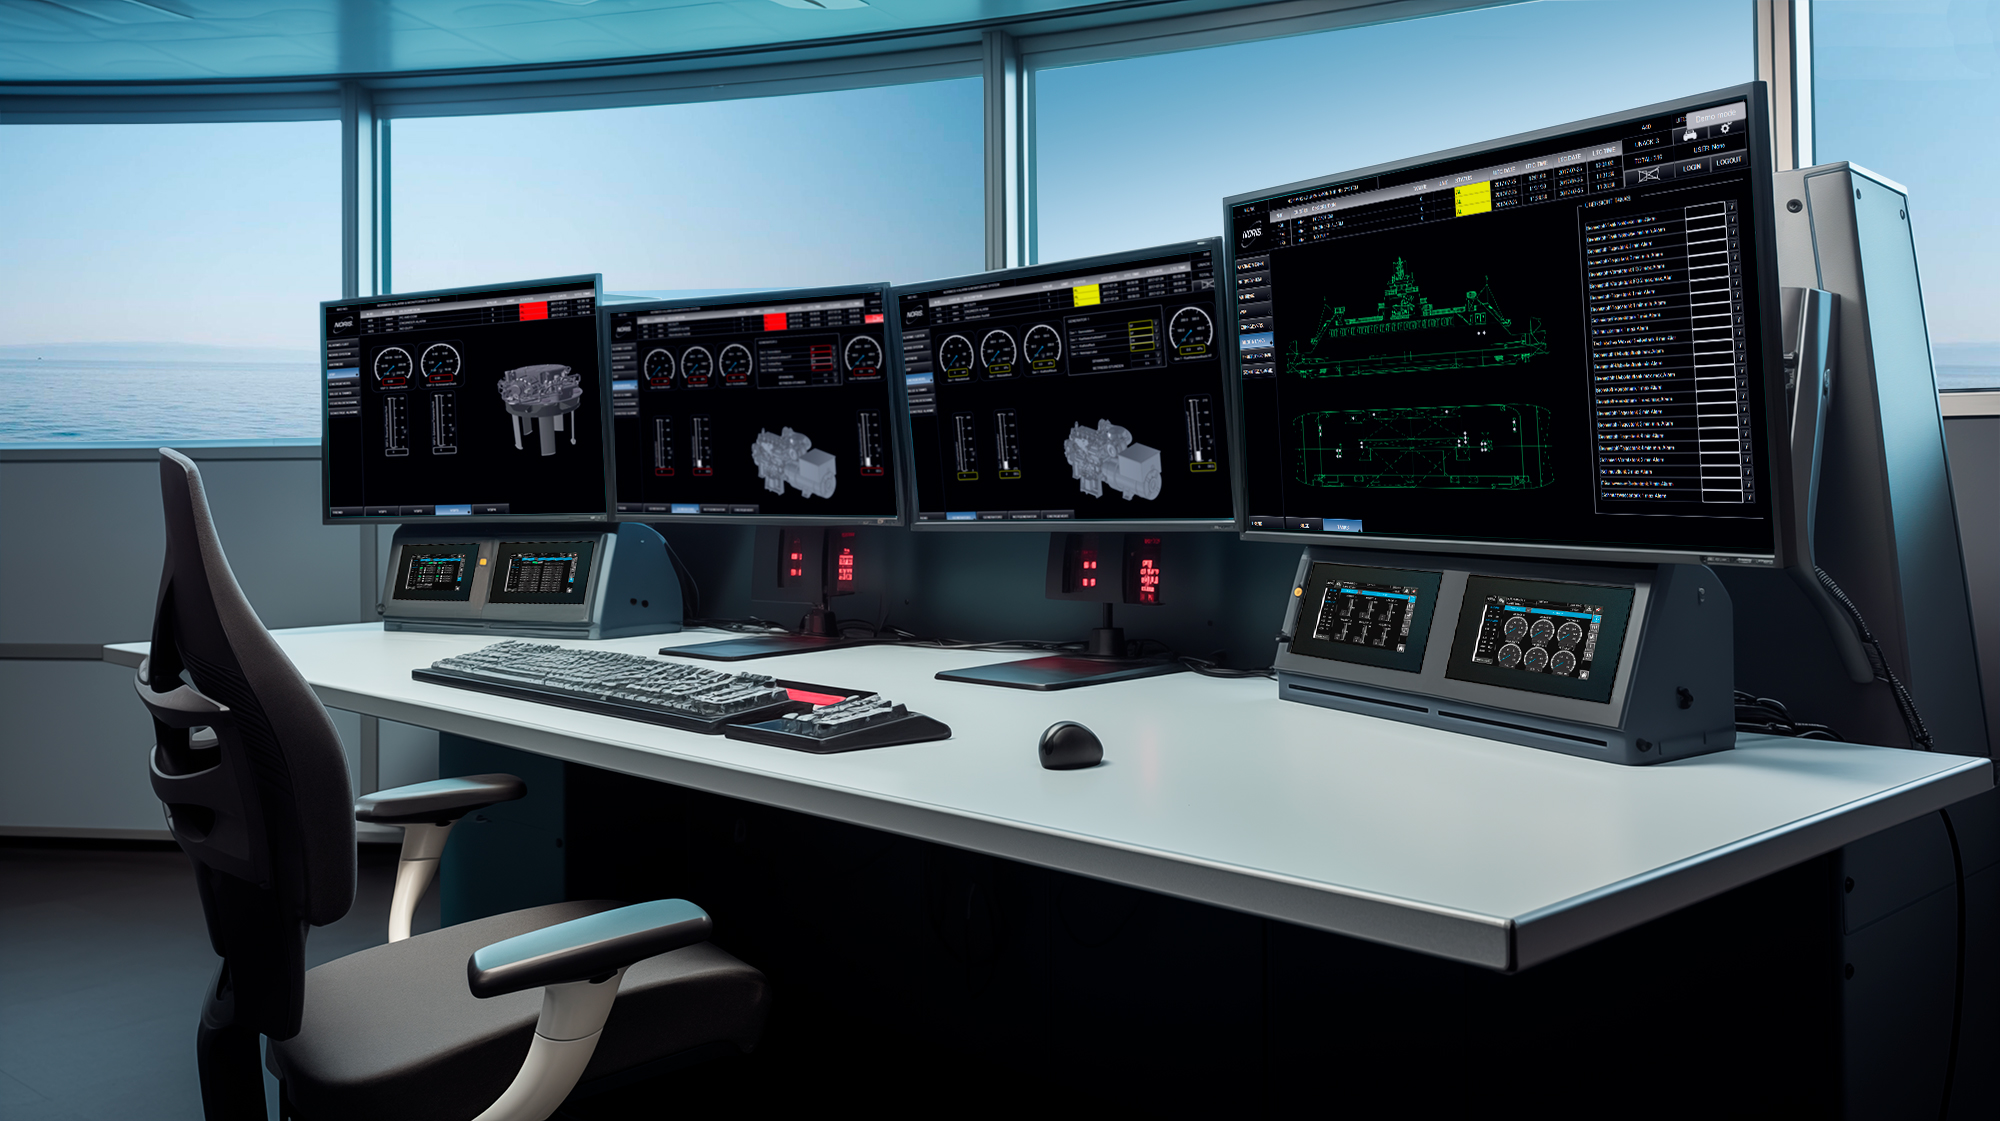 Das Bild zeigt eine Kontrollstation eines Schiffes mit mehreren Monitoren.